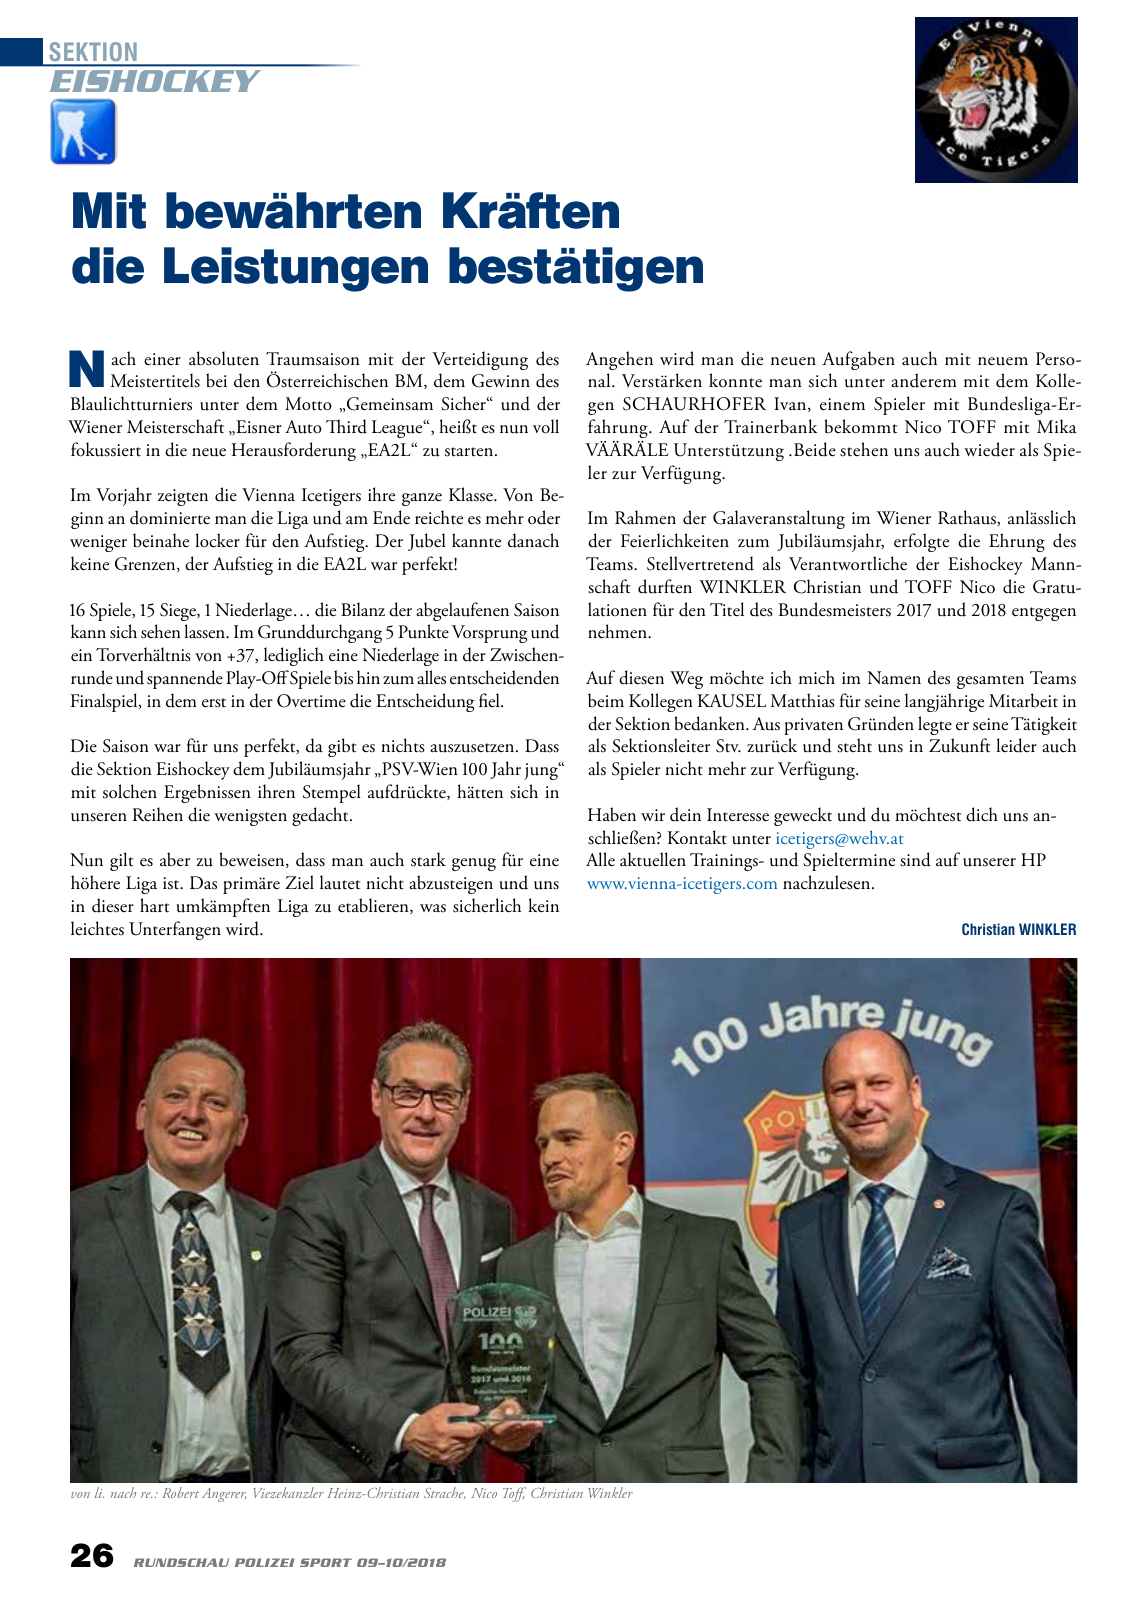 Vorschau Rundschau Polizei Sport 09-10/2018 Seite 26